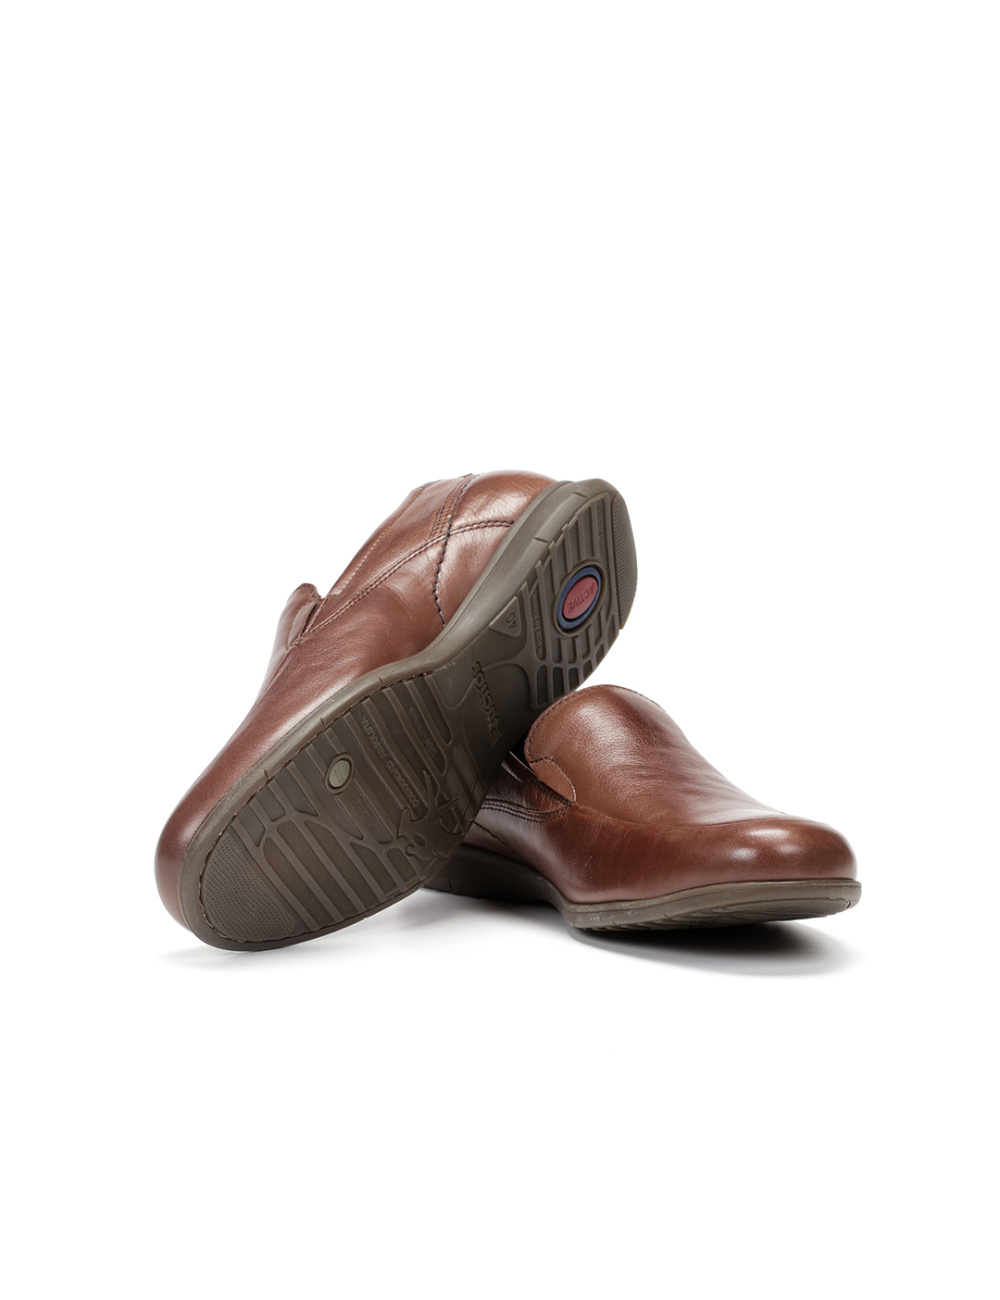 Fluchos - Zapato casual de hombre 9762